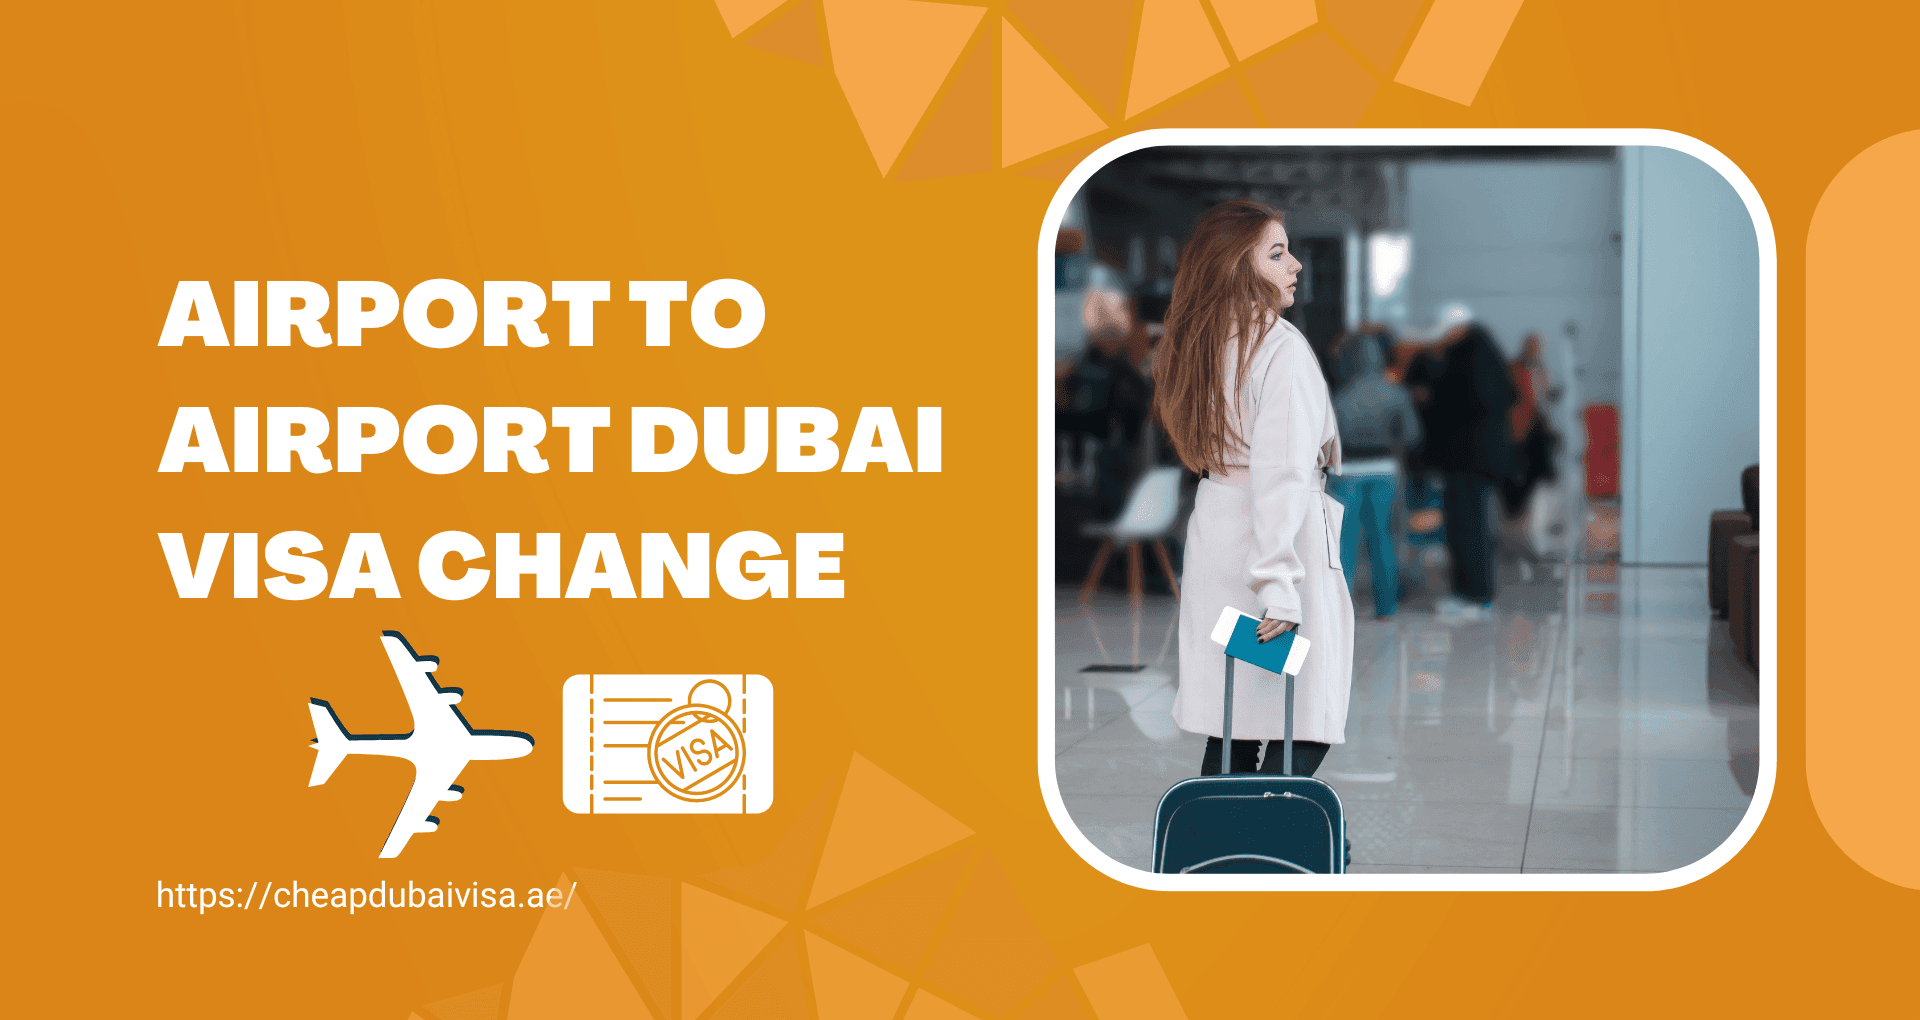 Airport to Airport Dubai Visa Change